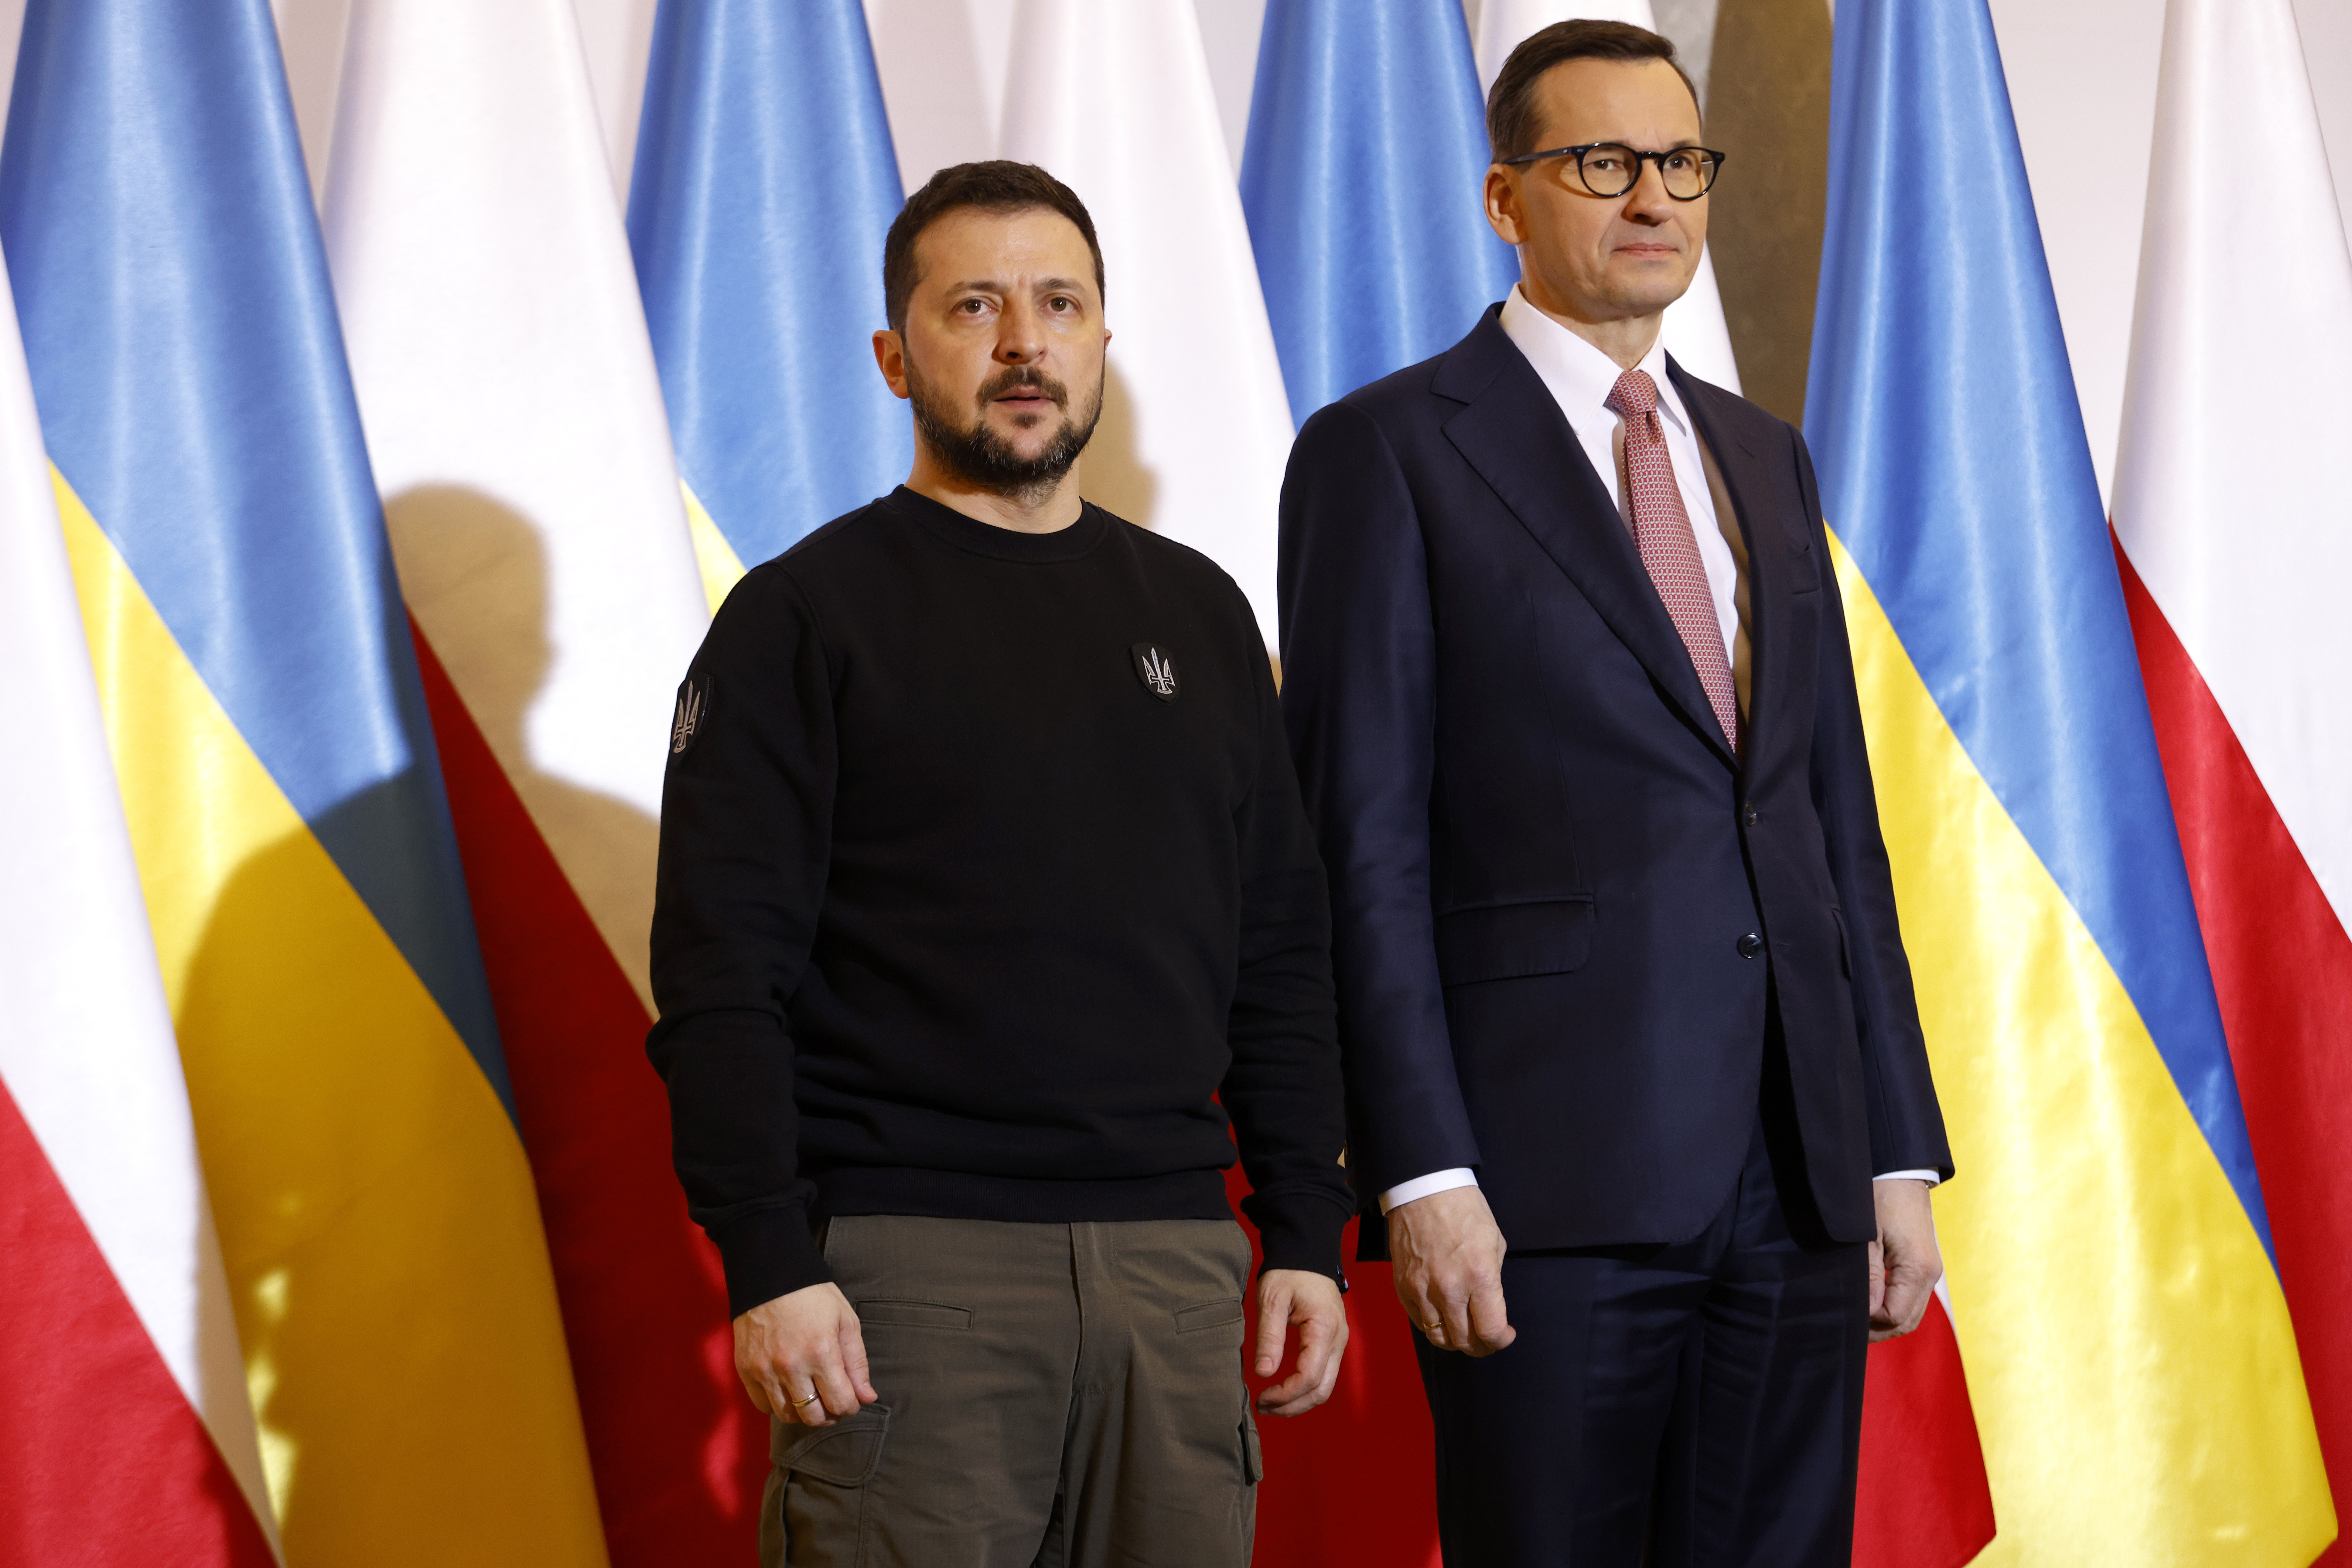 Ο Πολωνός πρωθυπουργός Μοραβιέτσκι καλεί τον Ζελένσκι «να μην προσβάλει ξανά τους Πολωνούς»